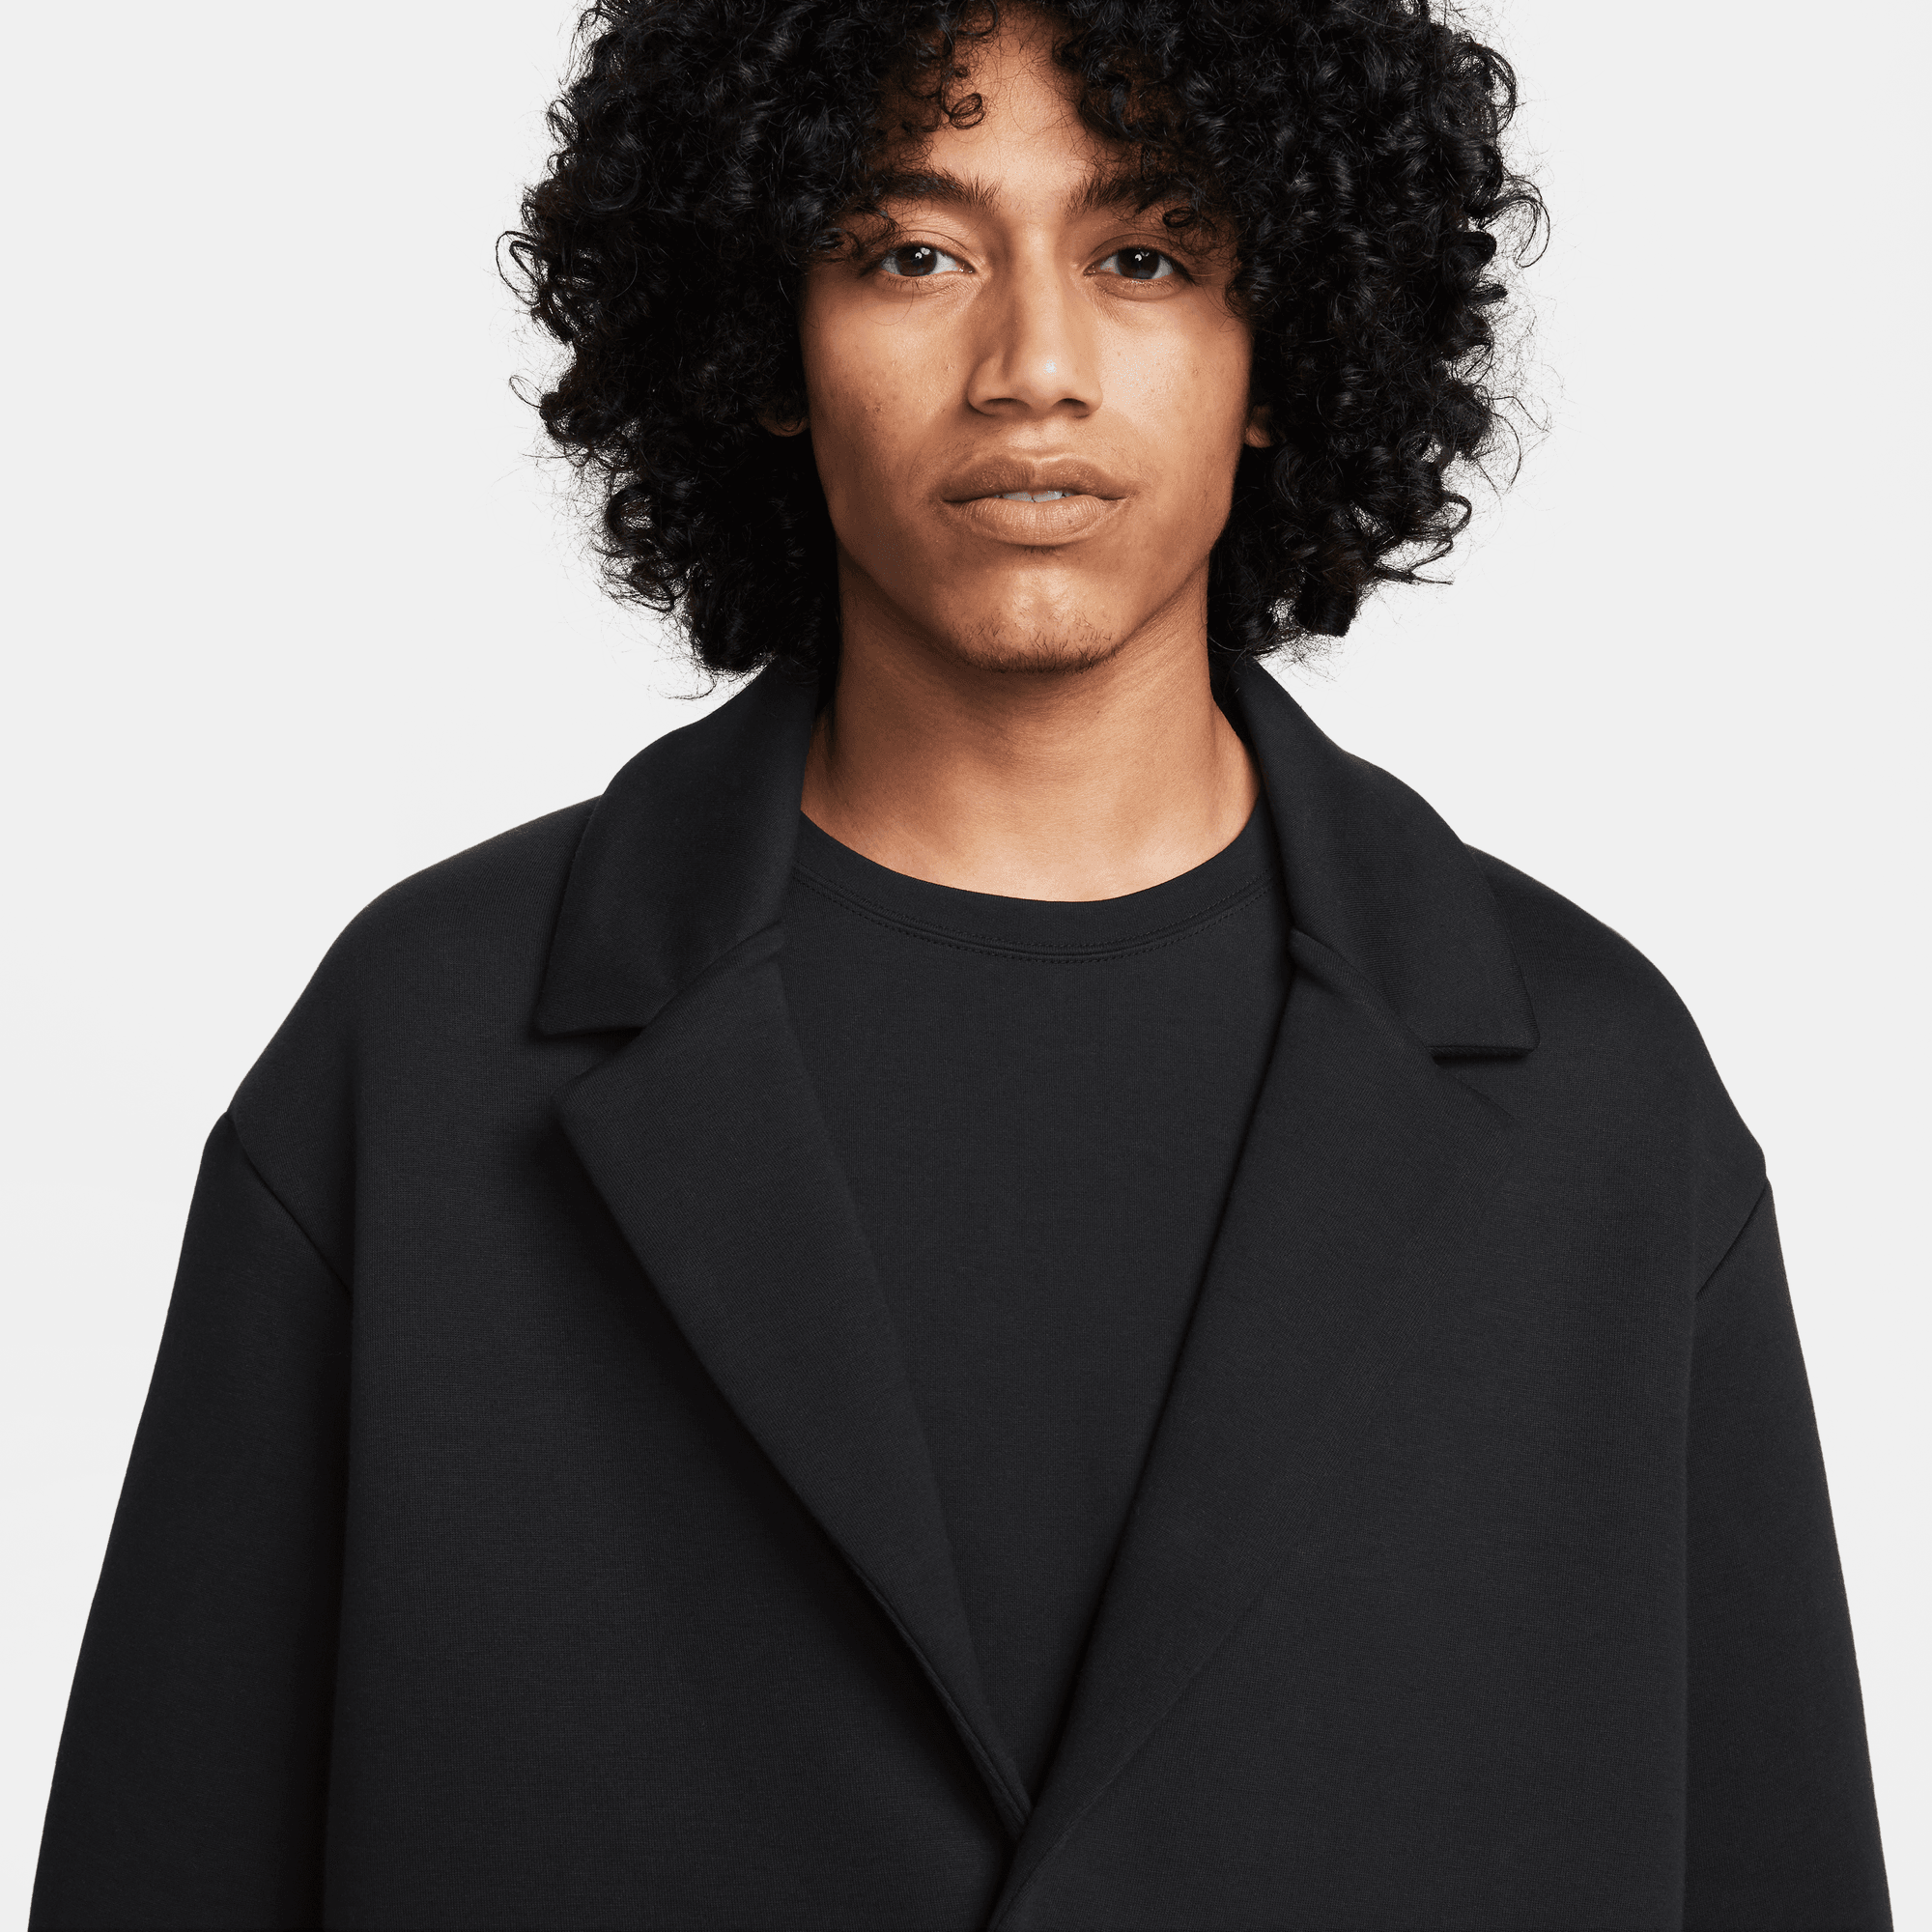 Nike Sportswear Tech Fleece Reimagined Men's Loose Fit Trench Coat